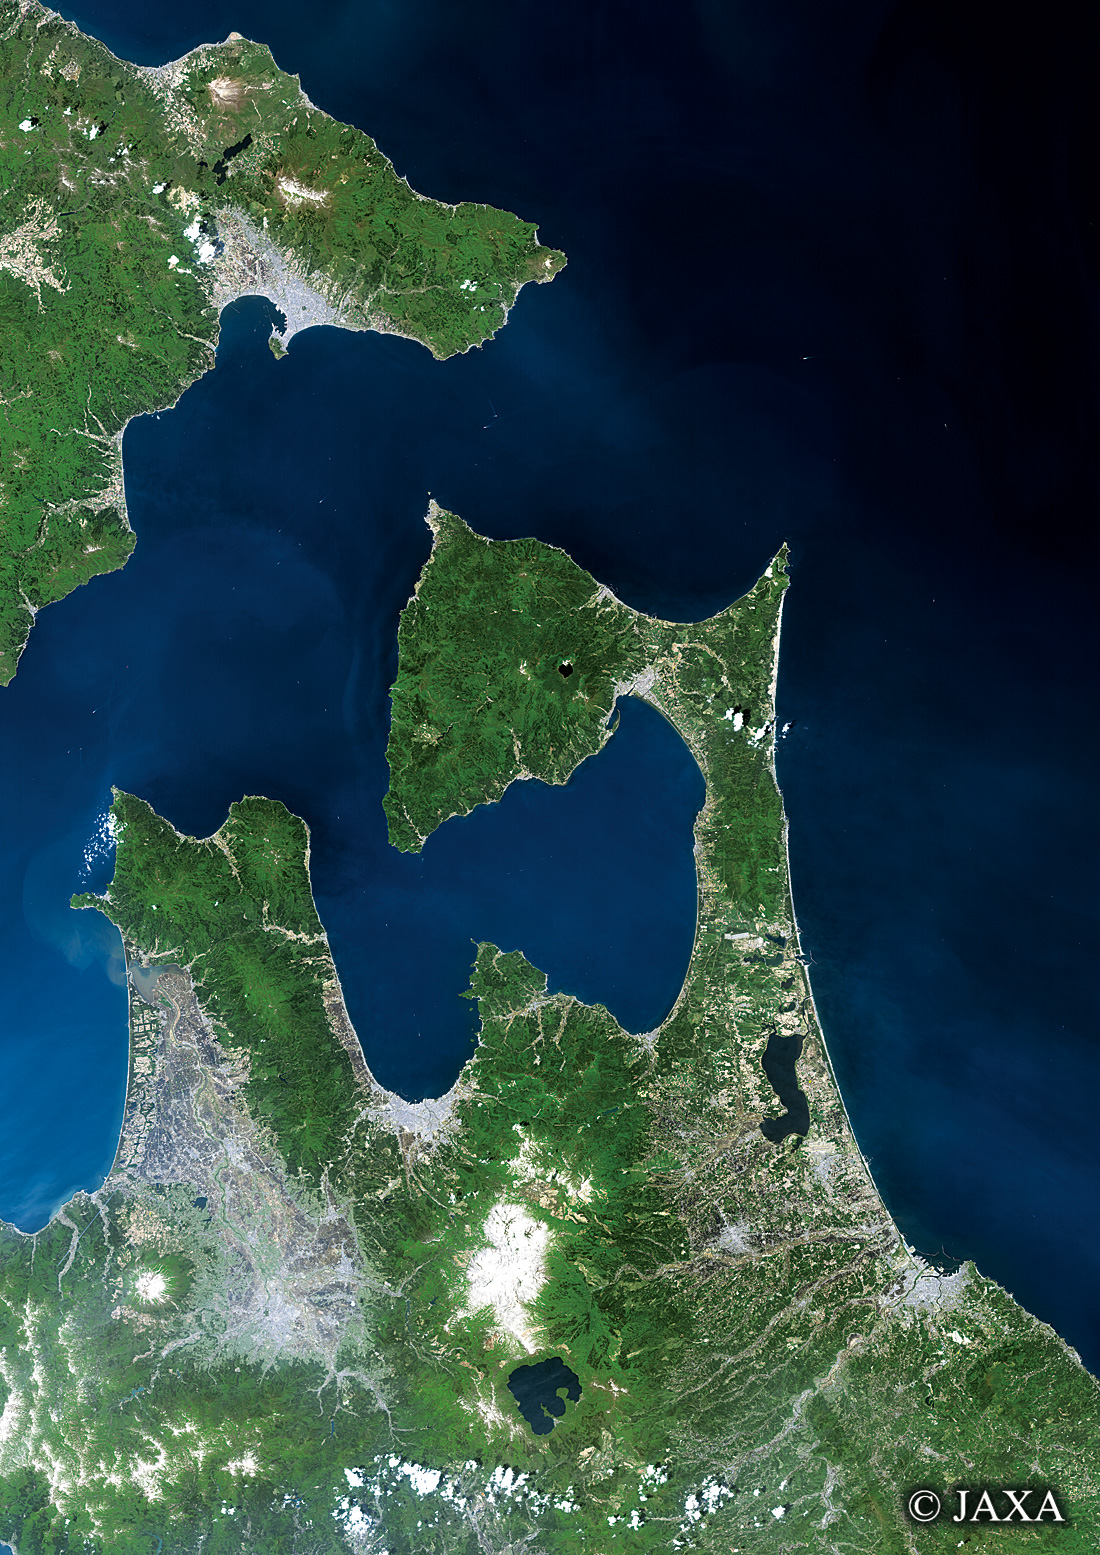 だいちから見た日本の都市 津軽海峡:衛星画像